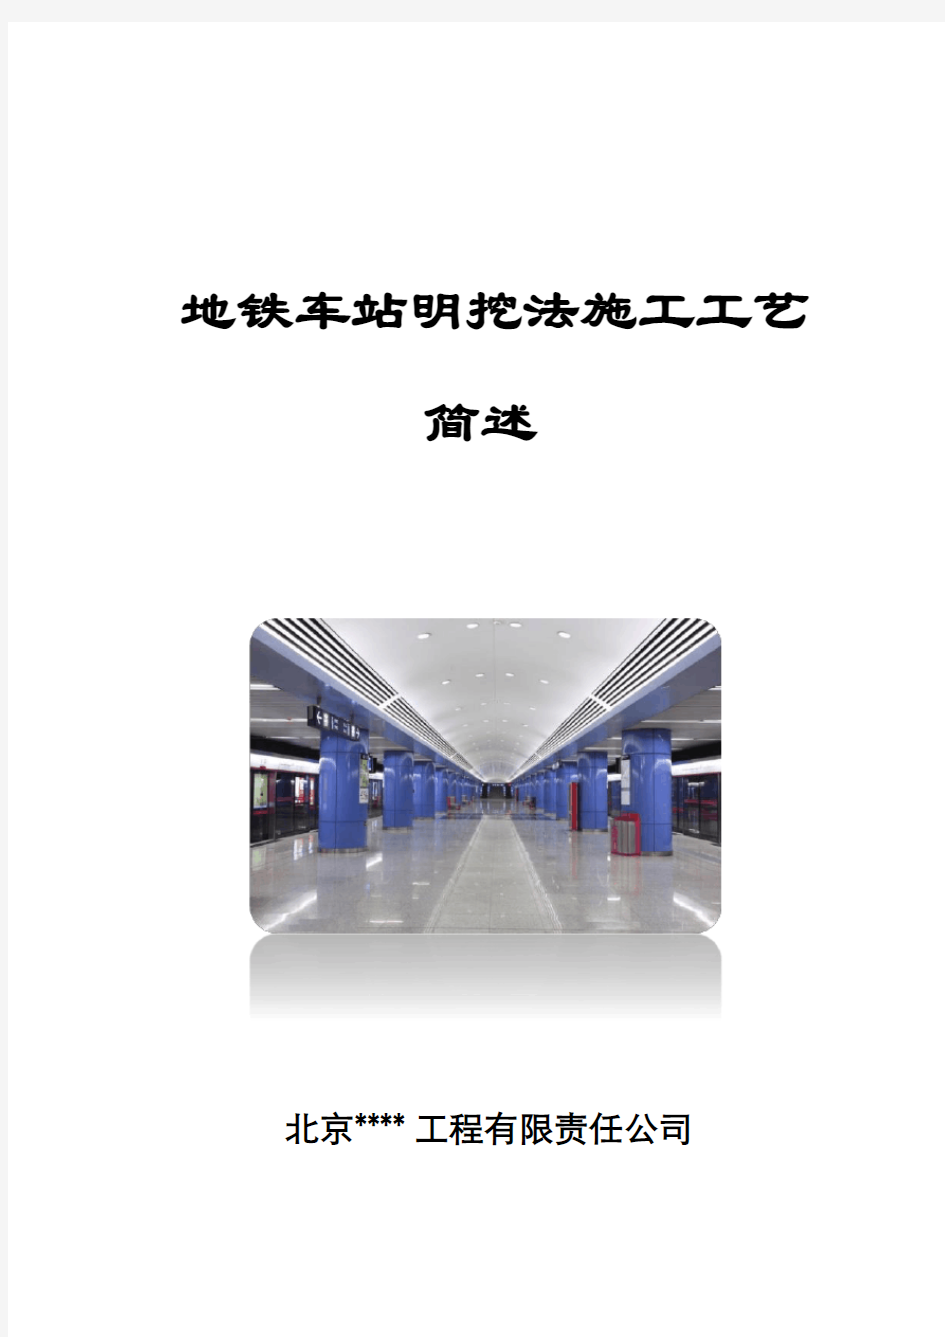 地铁车站明挖法施工工艺简述(80页)